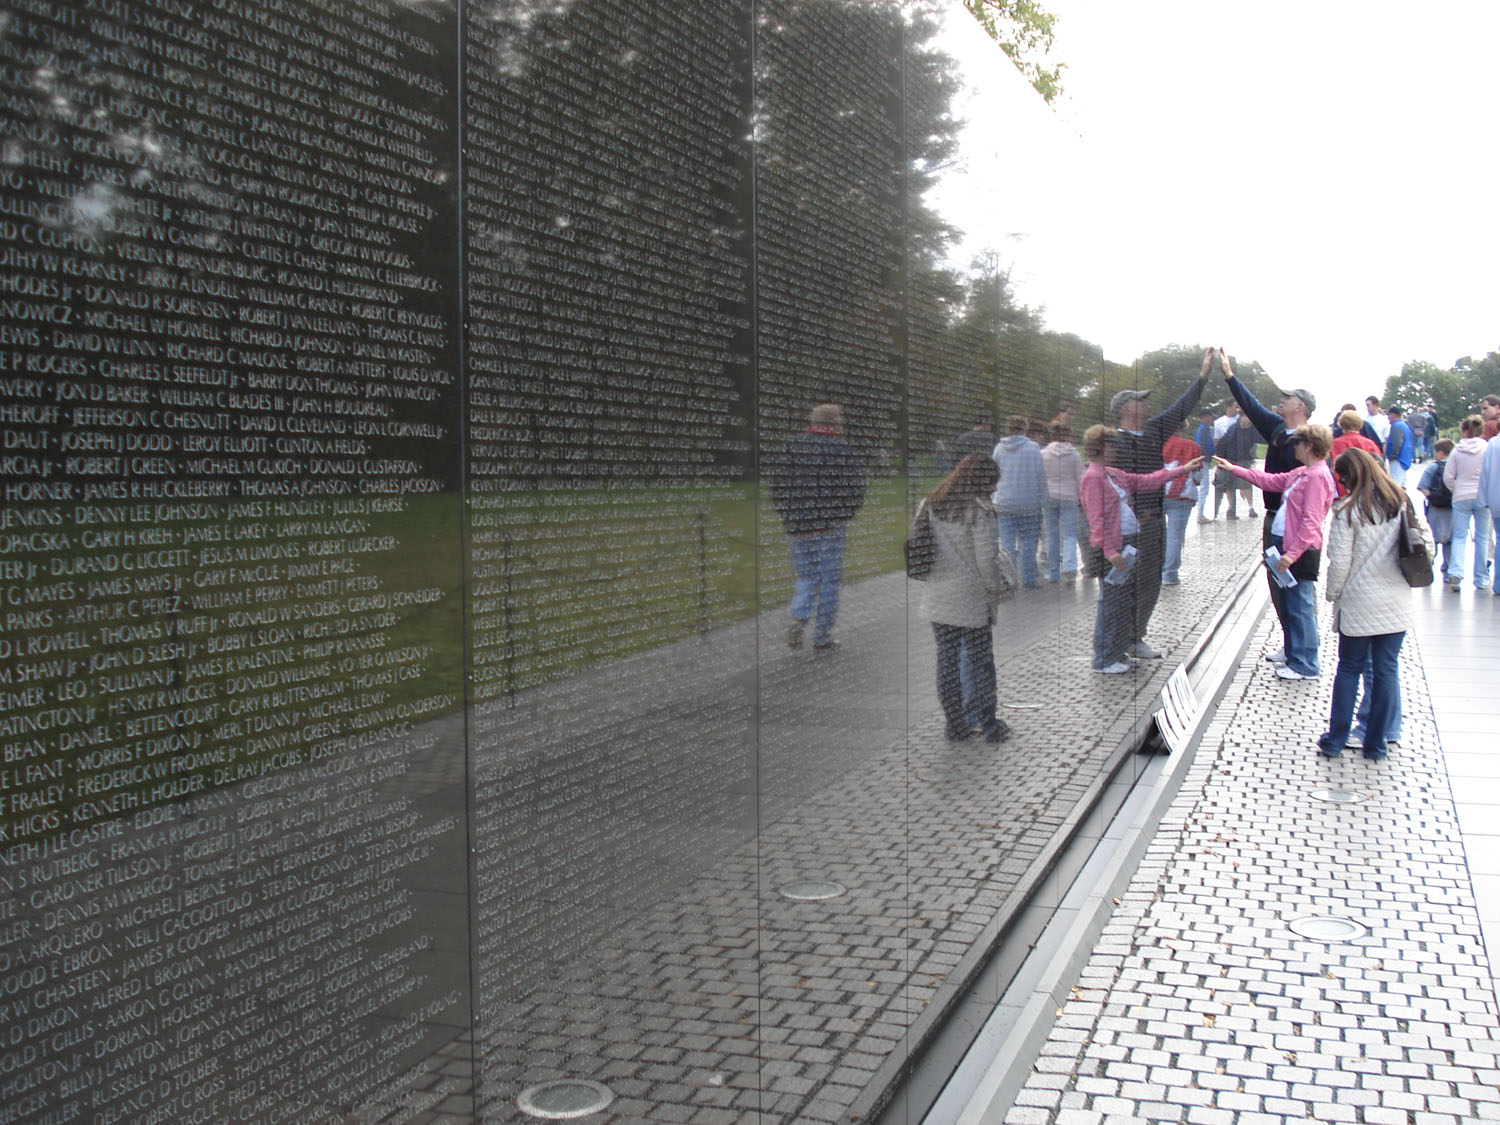 Vietnam War Memorial in Washington D.C.